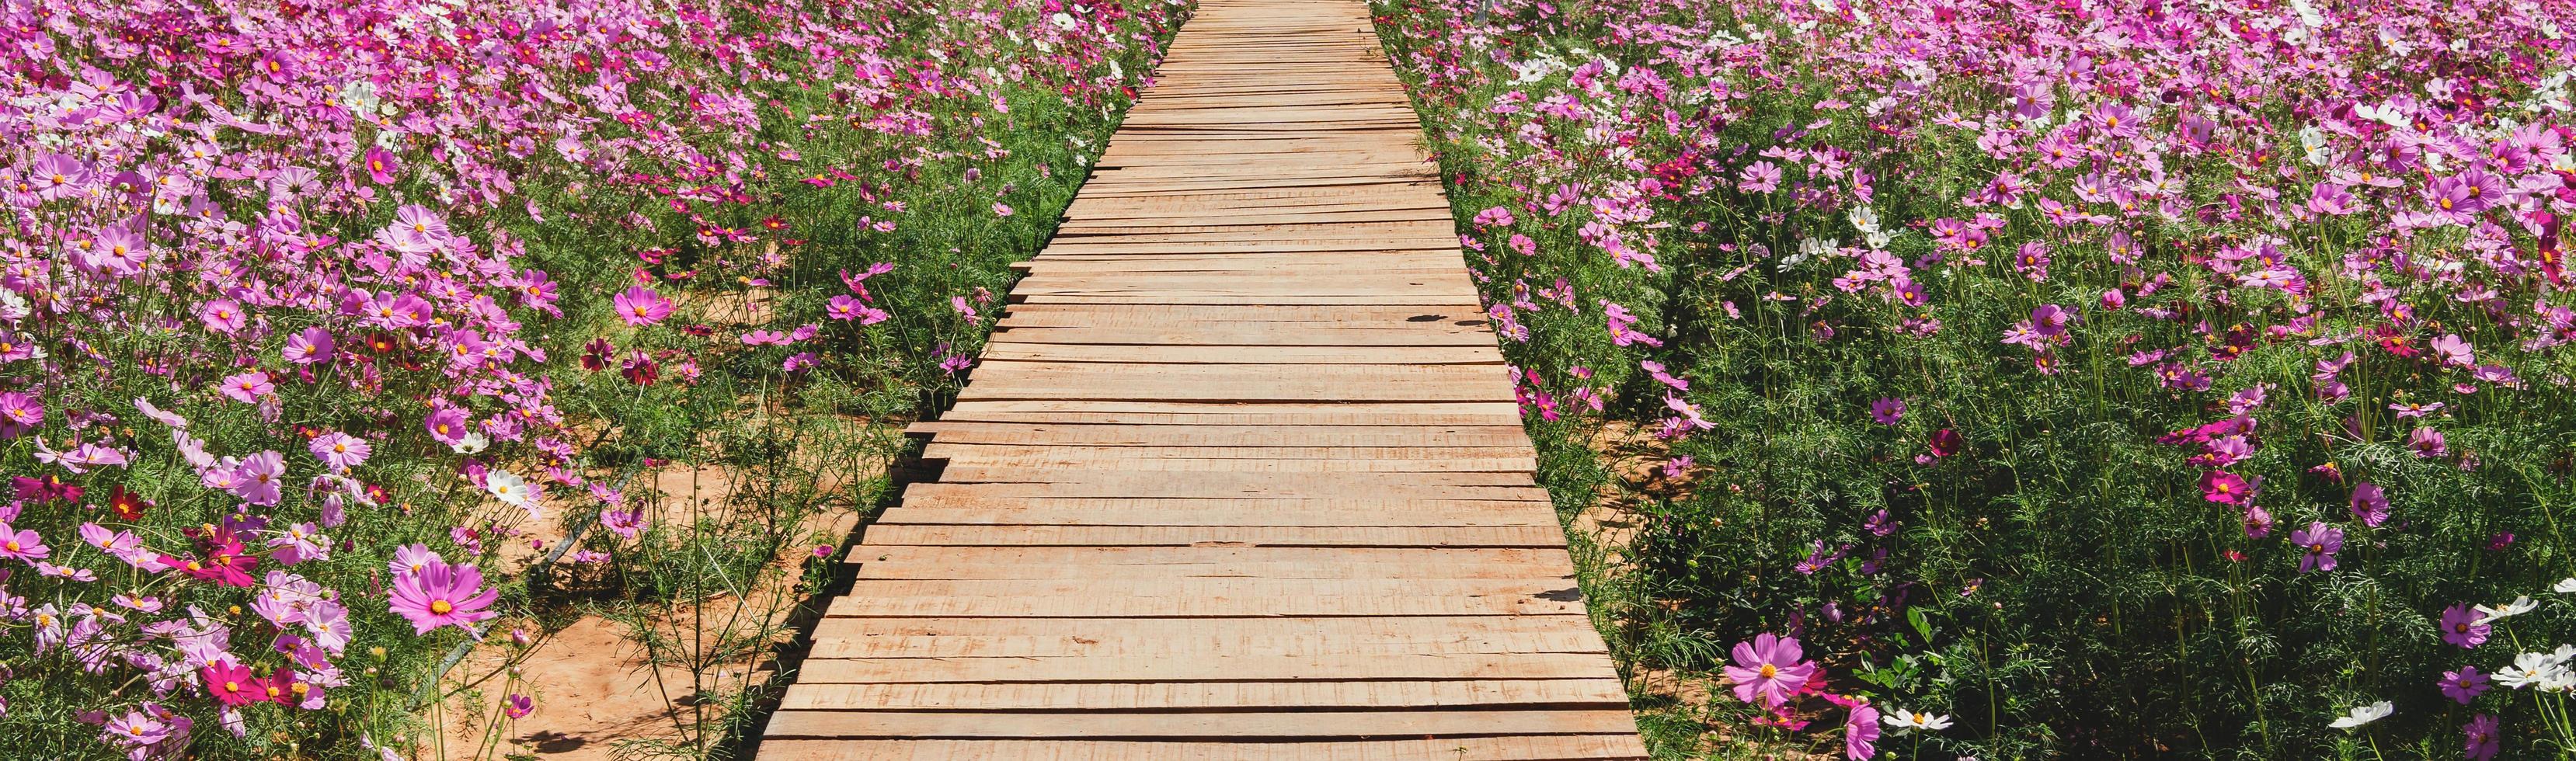 puente de madera con flores en el parque foto